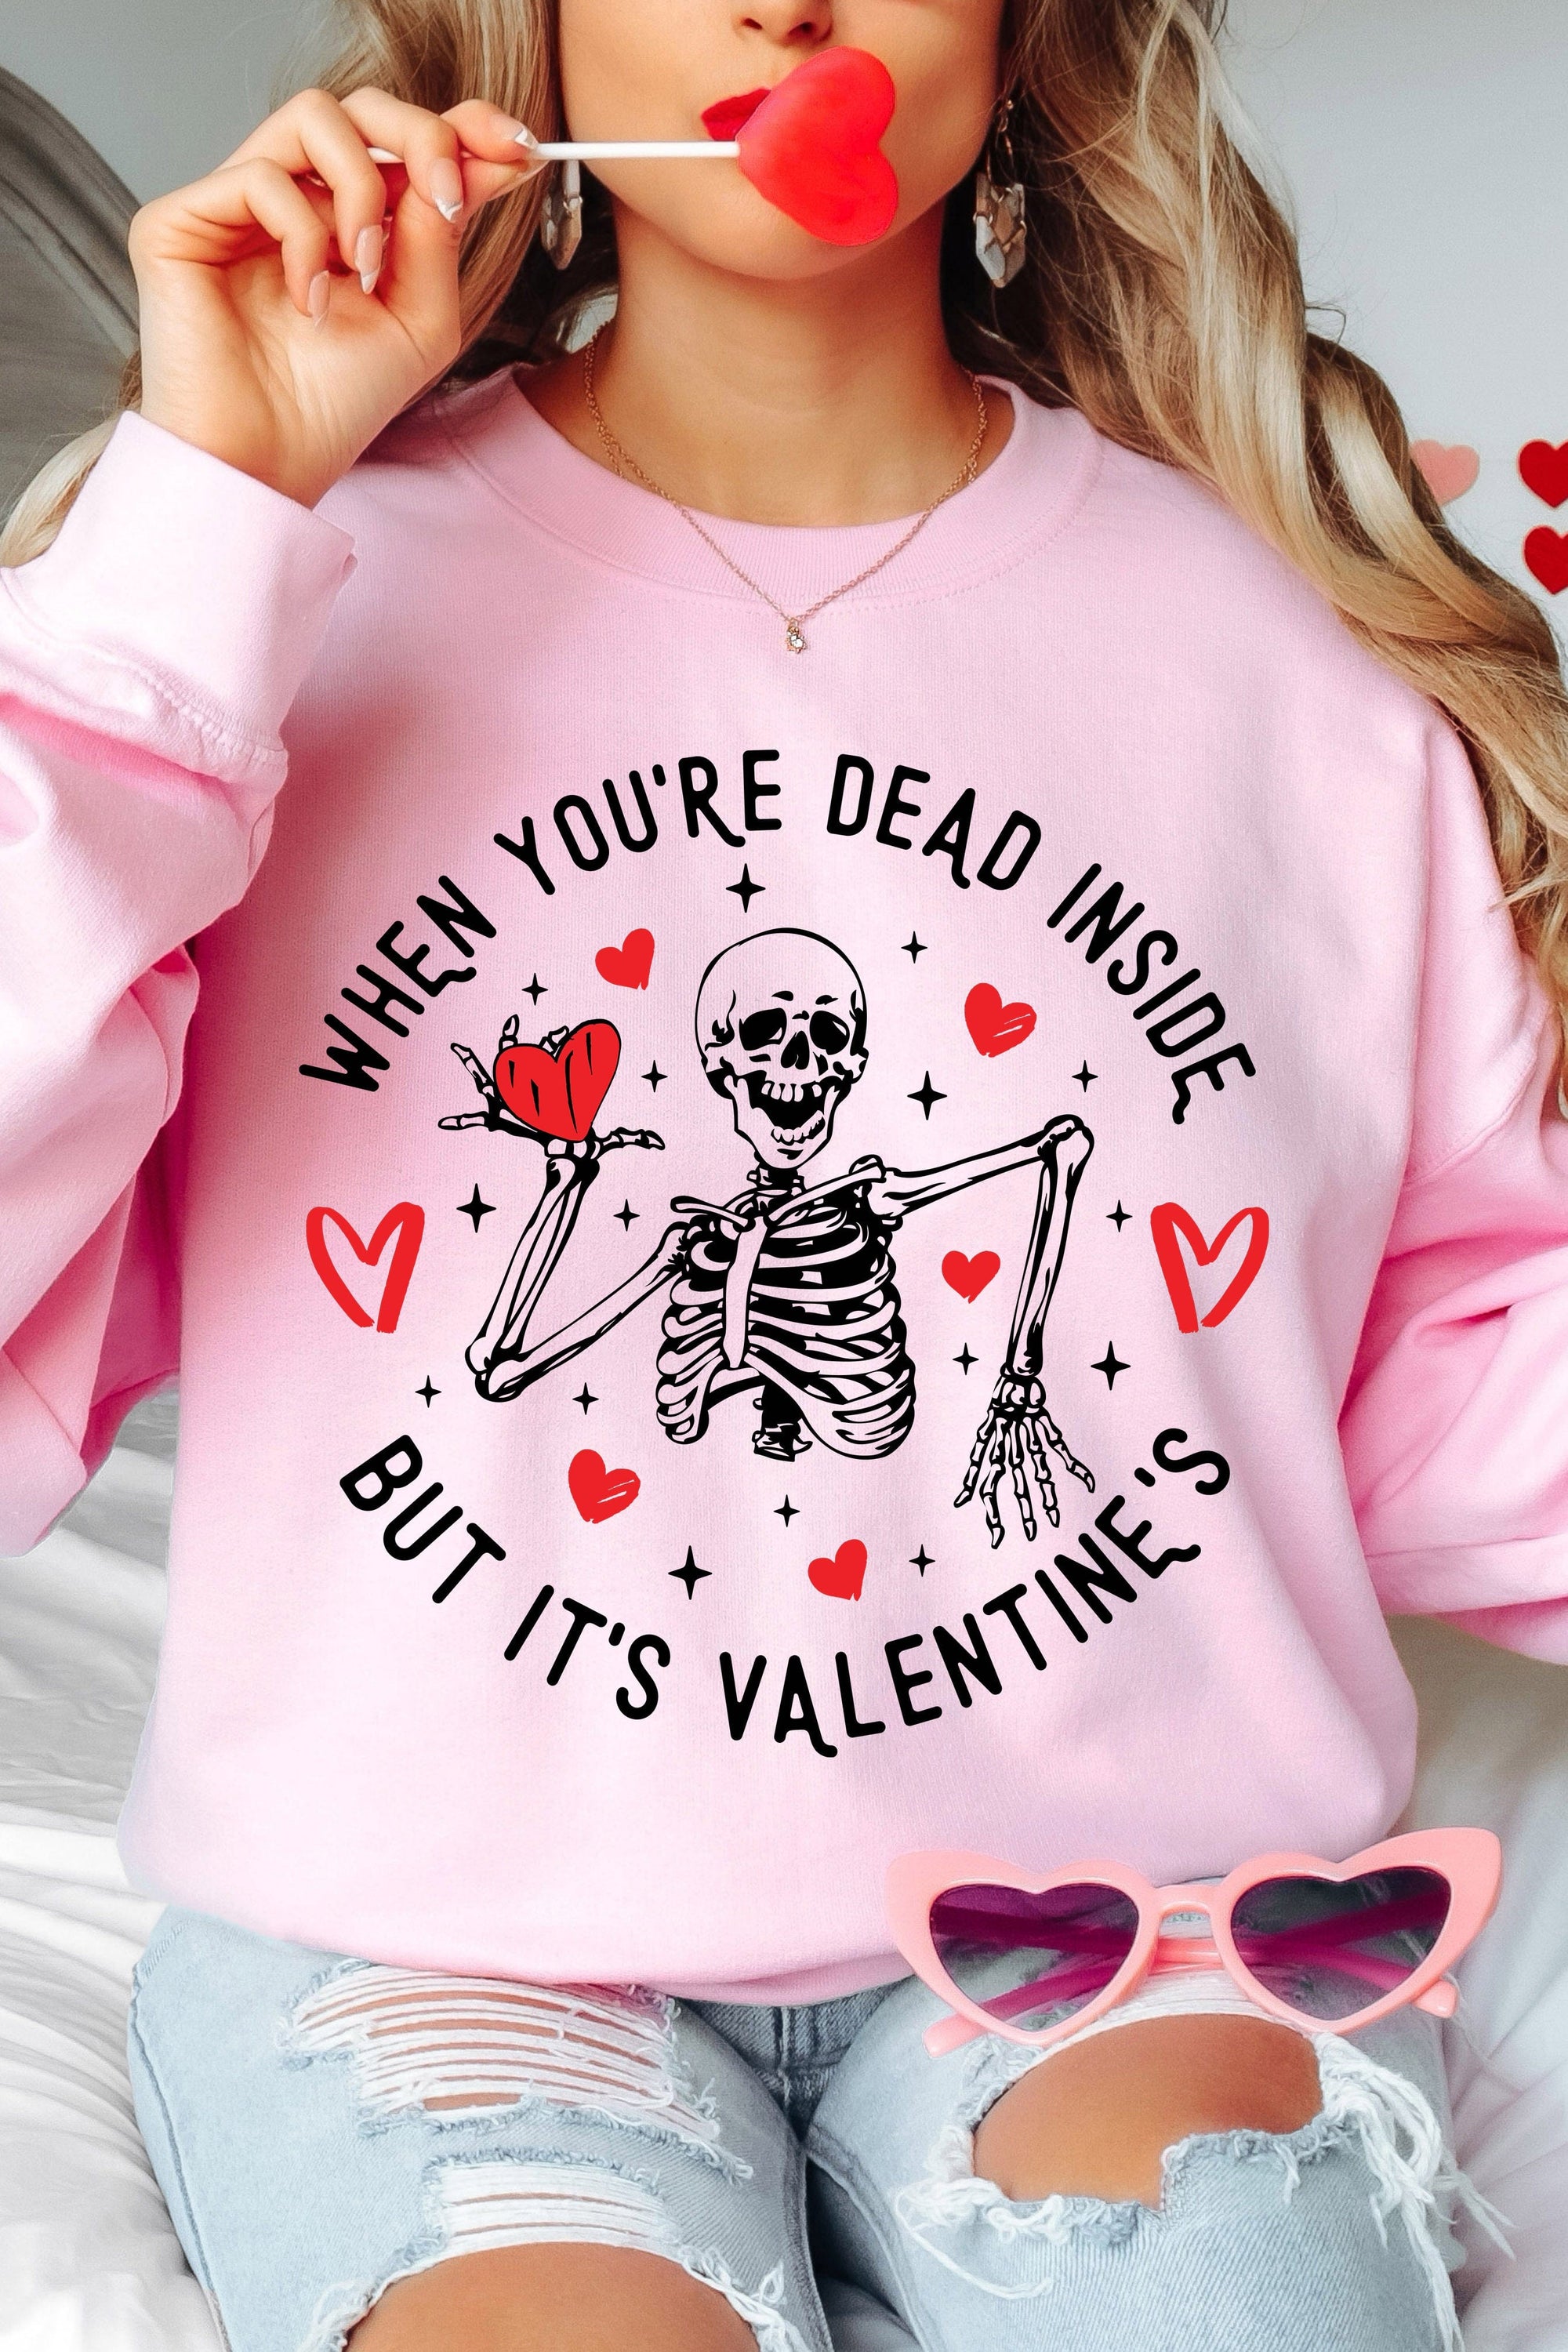 When You're Dead Inside But It's Valentine's Fleece Lined Sweatshirt